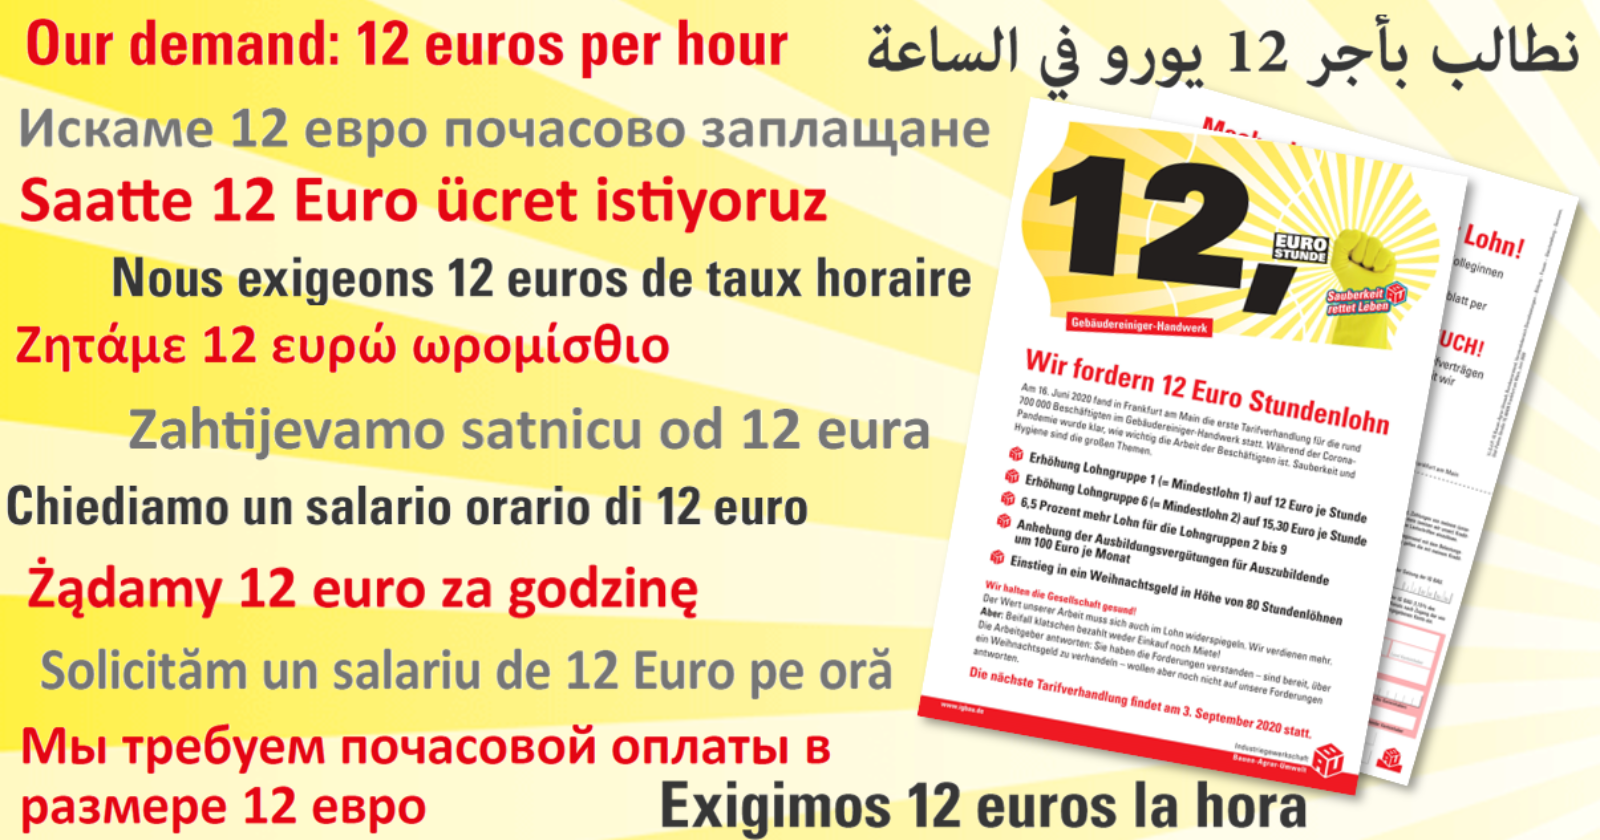 Flugblatt "Wir fordern 12 Euro Stundenlohn" in verschiedenen Sprachen